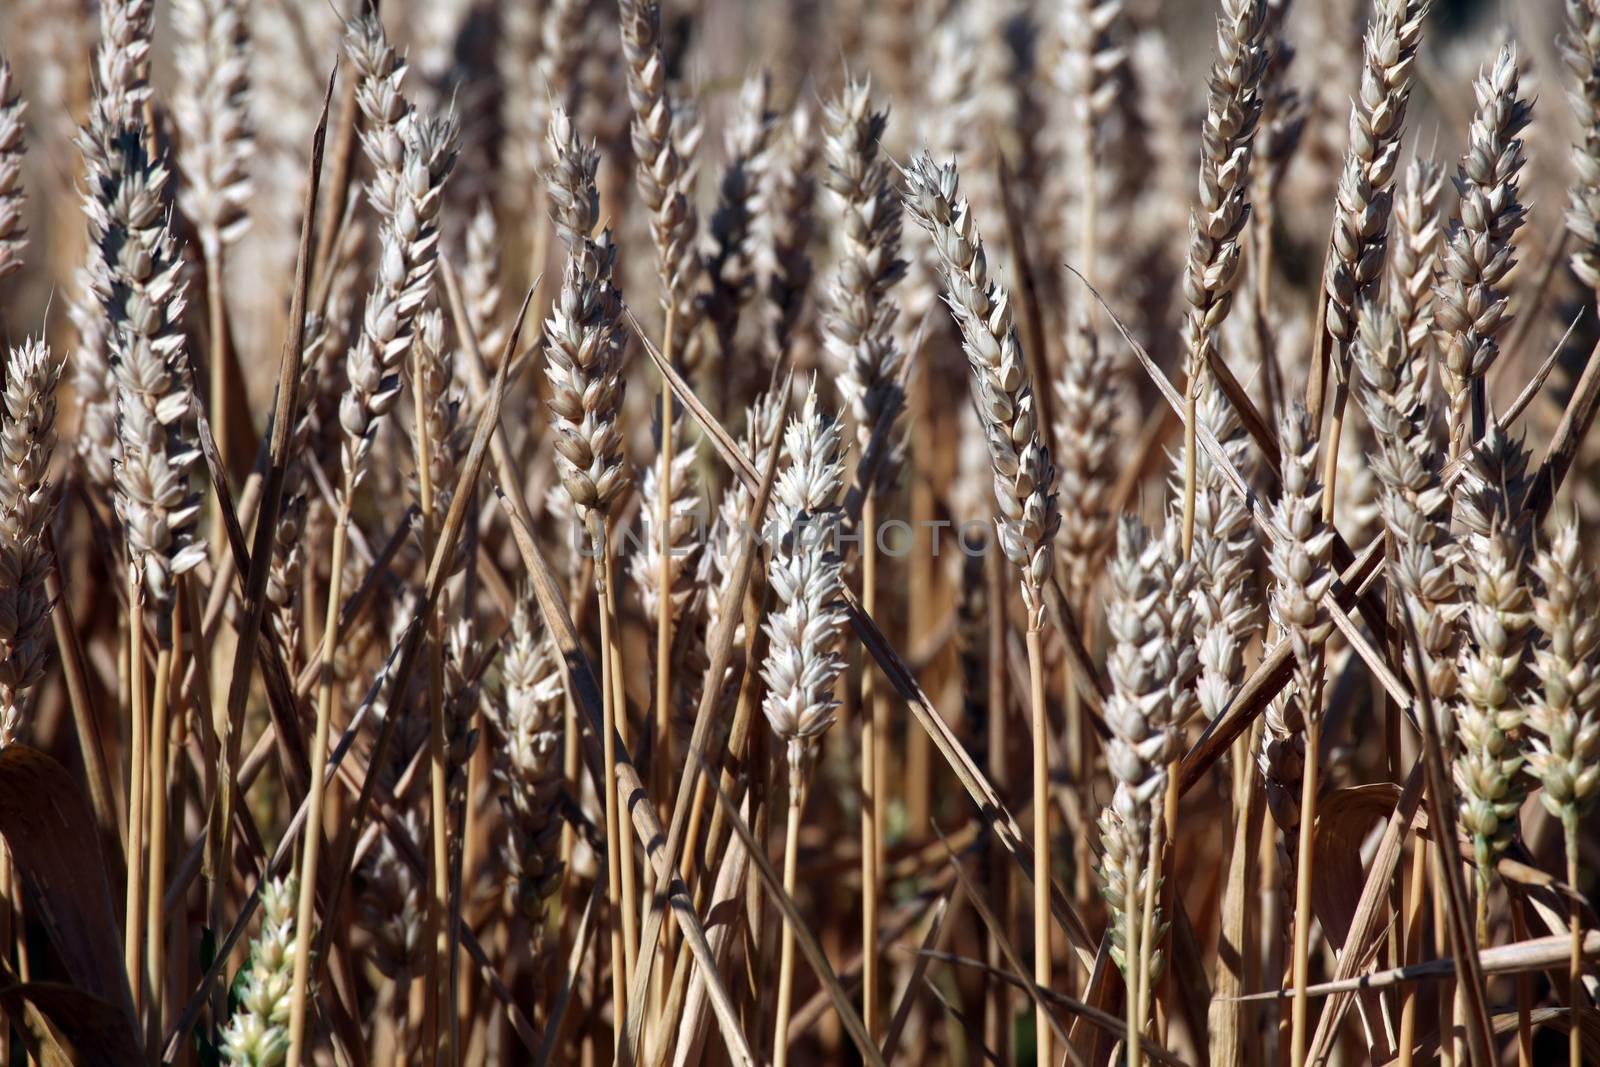 Wheat growing in field by atlas